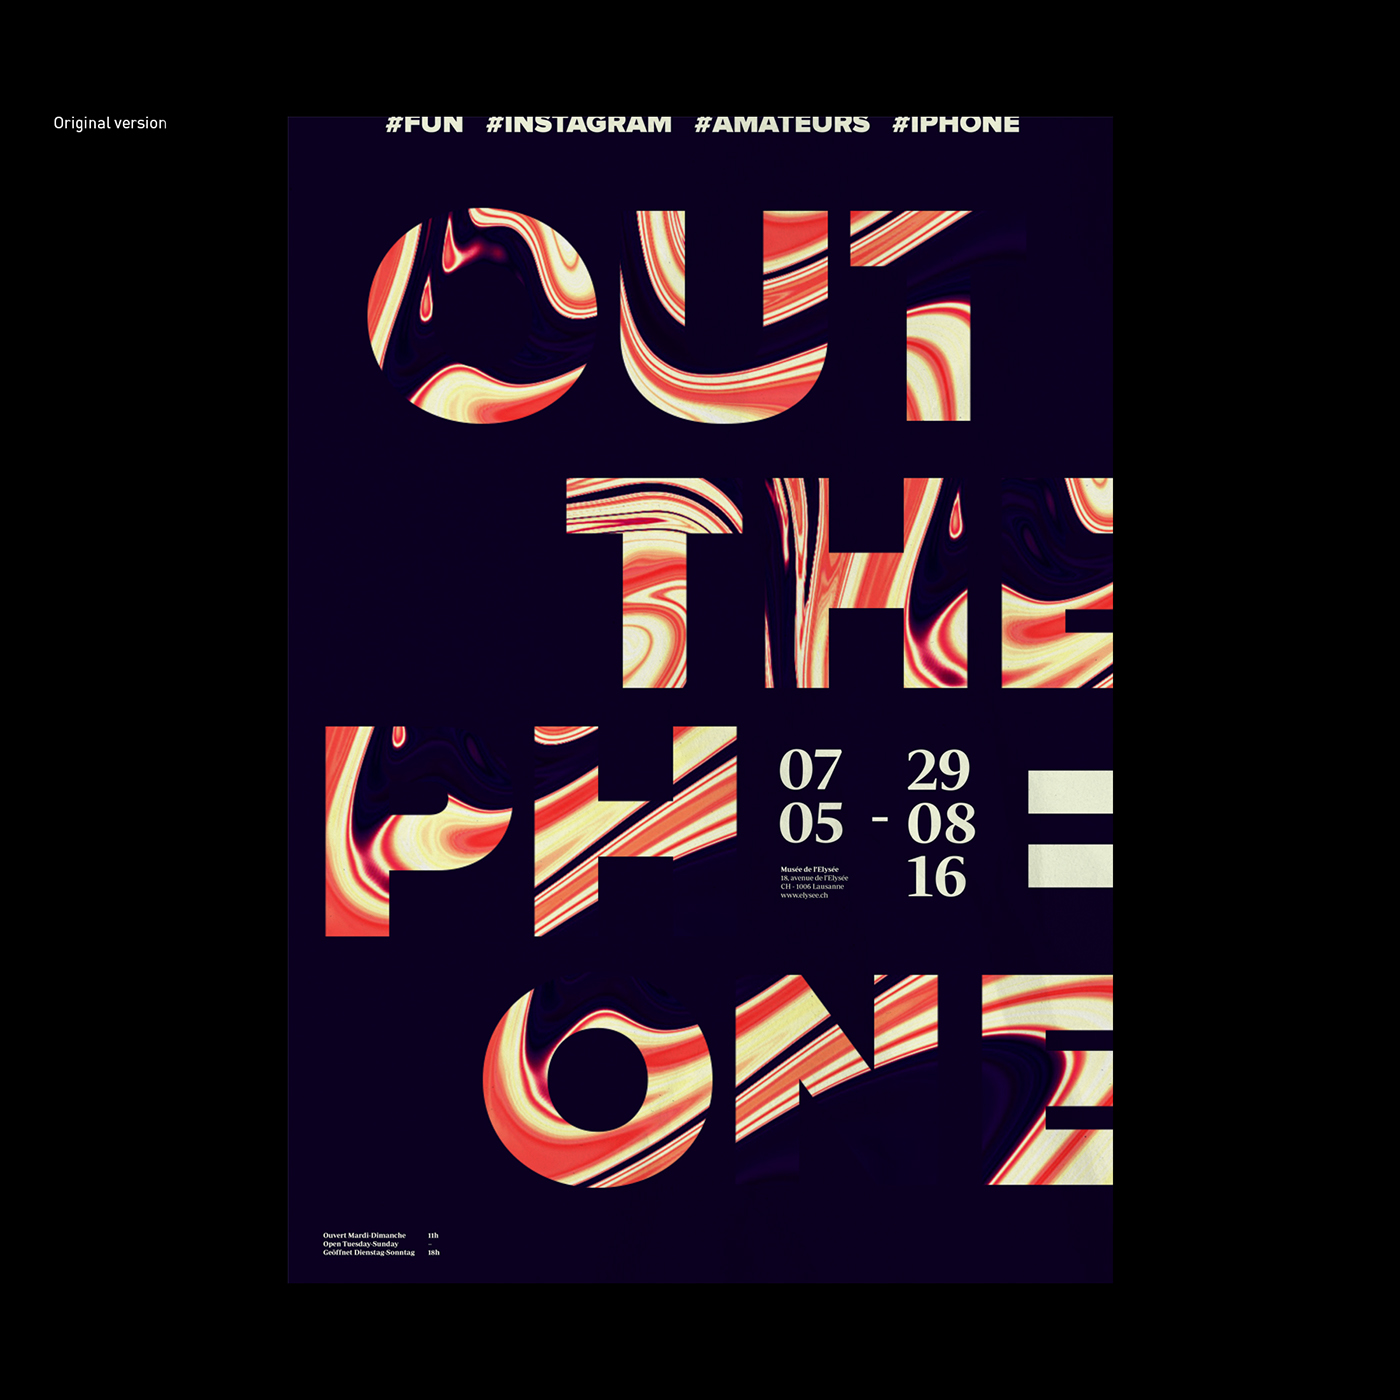 Musée de l'Elysée – Design de série 2017 – Posters on Behance